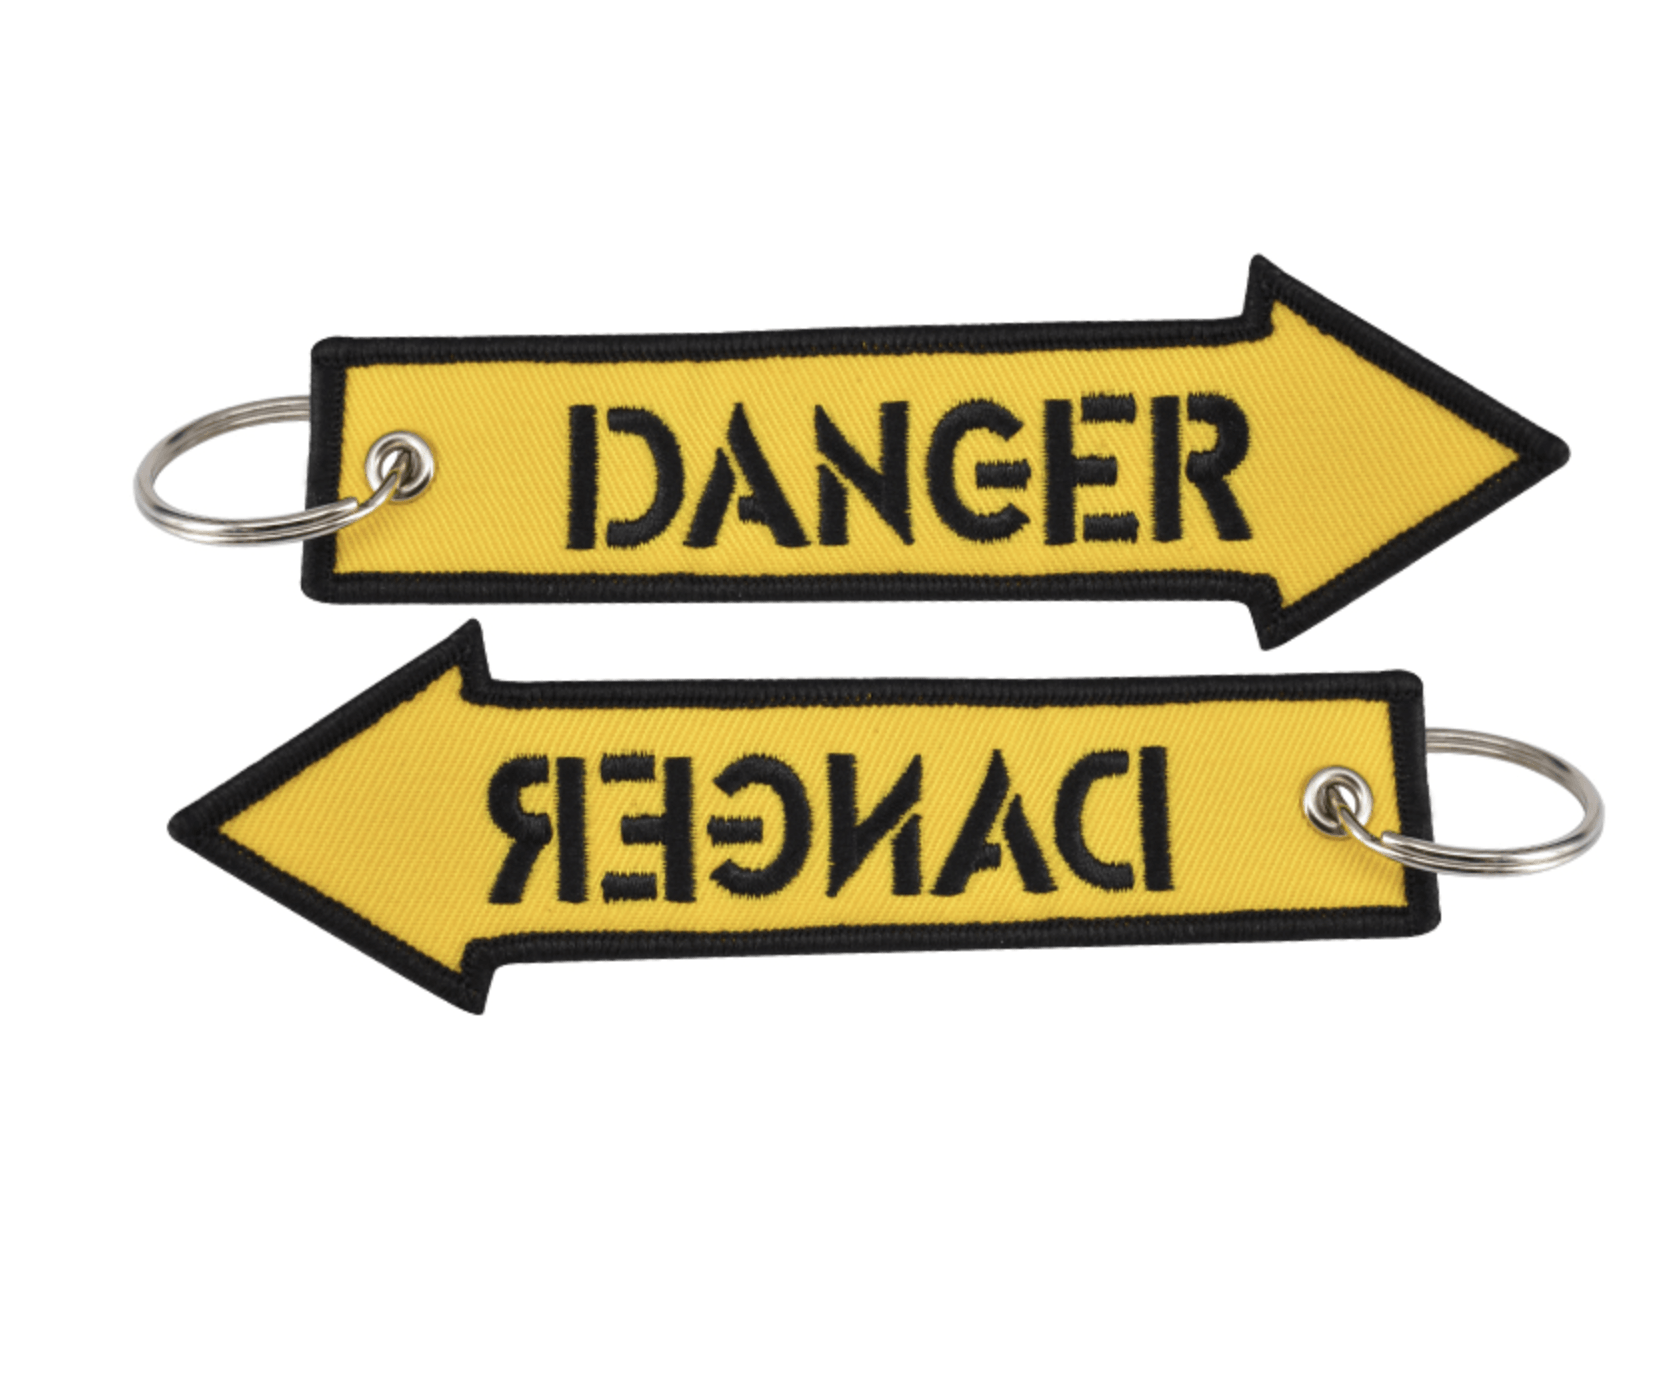 Danger Keychain - 25center.com